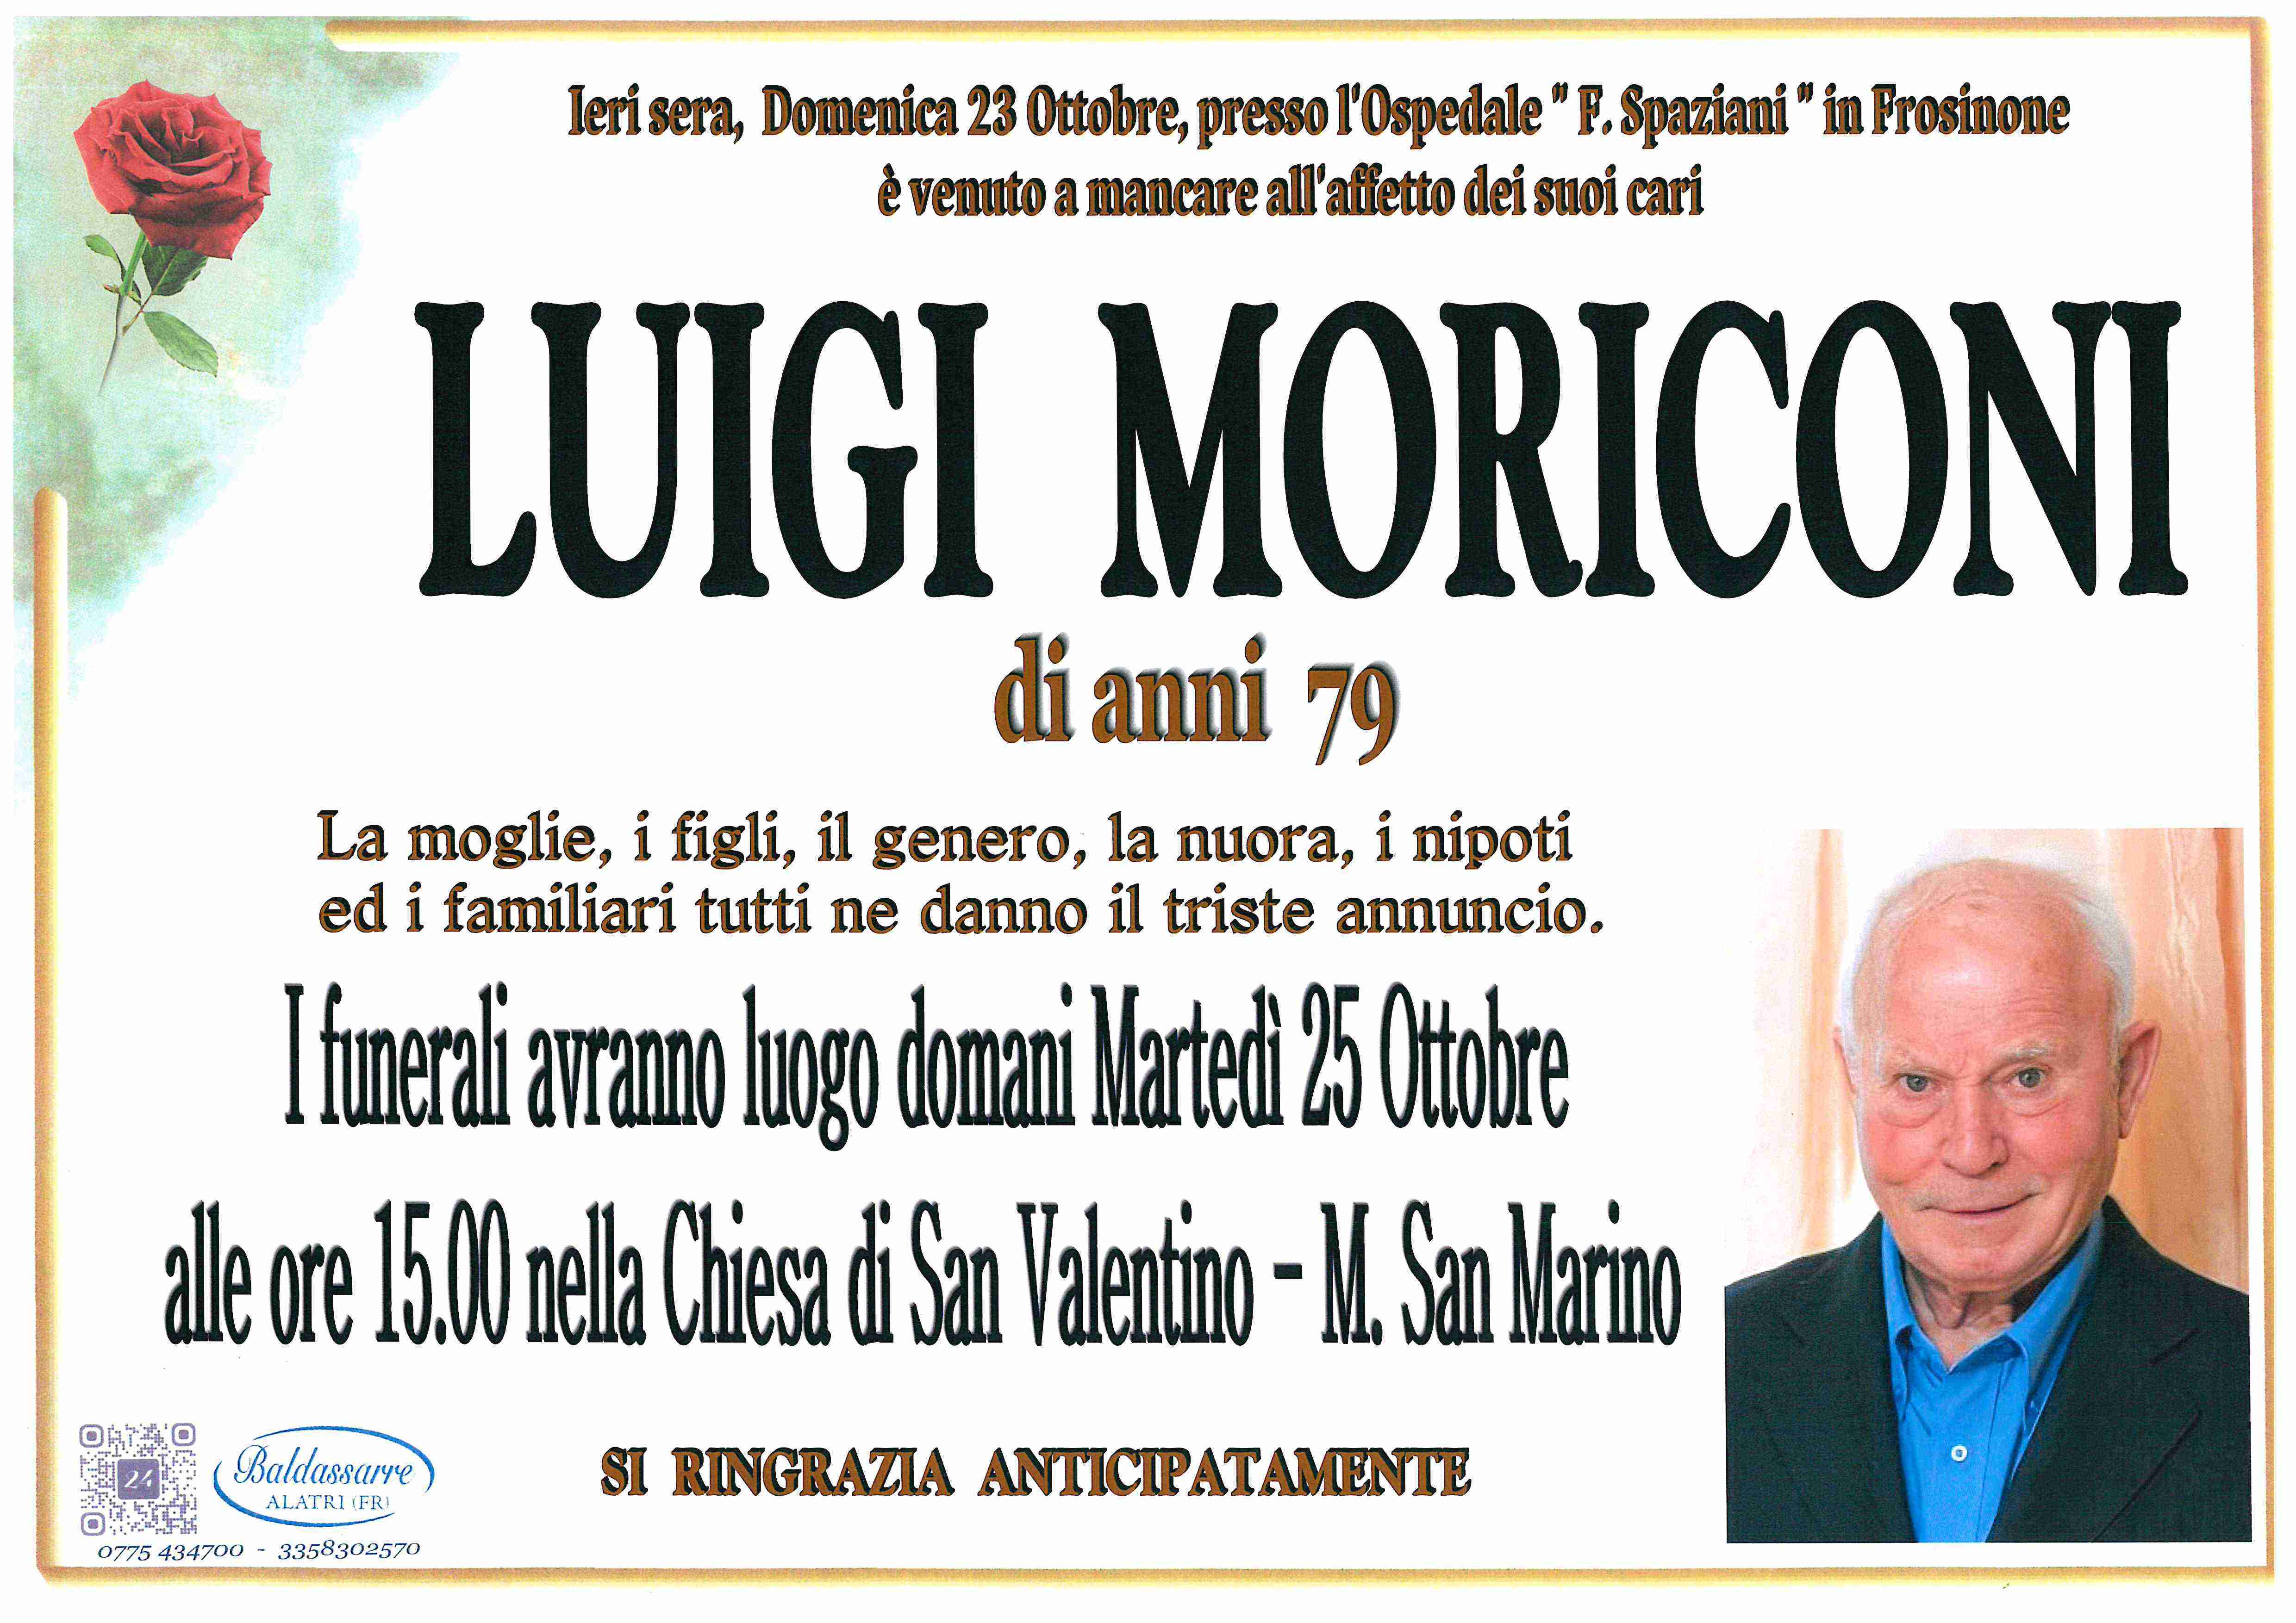 Luigi Moriconi